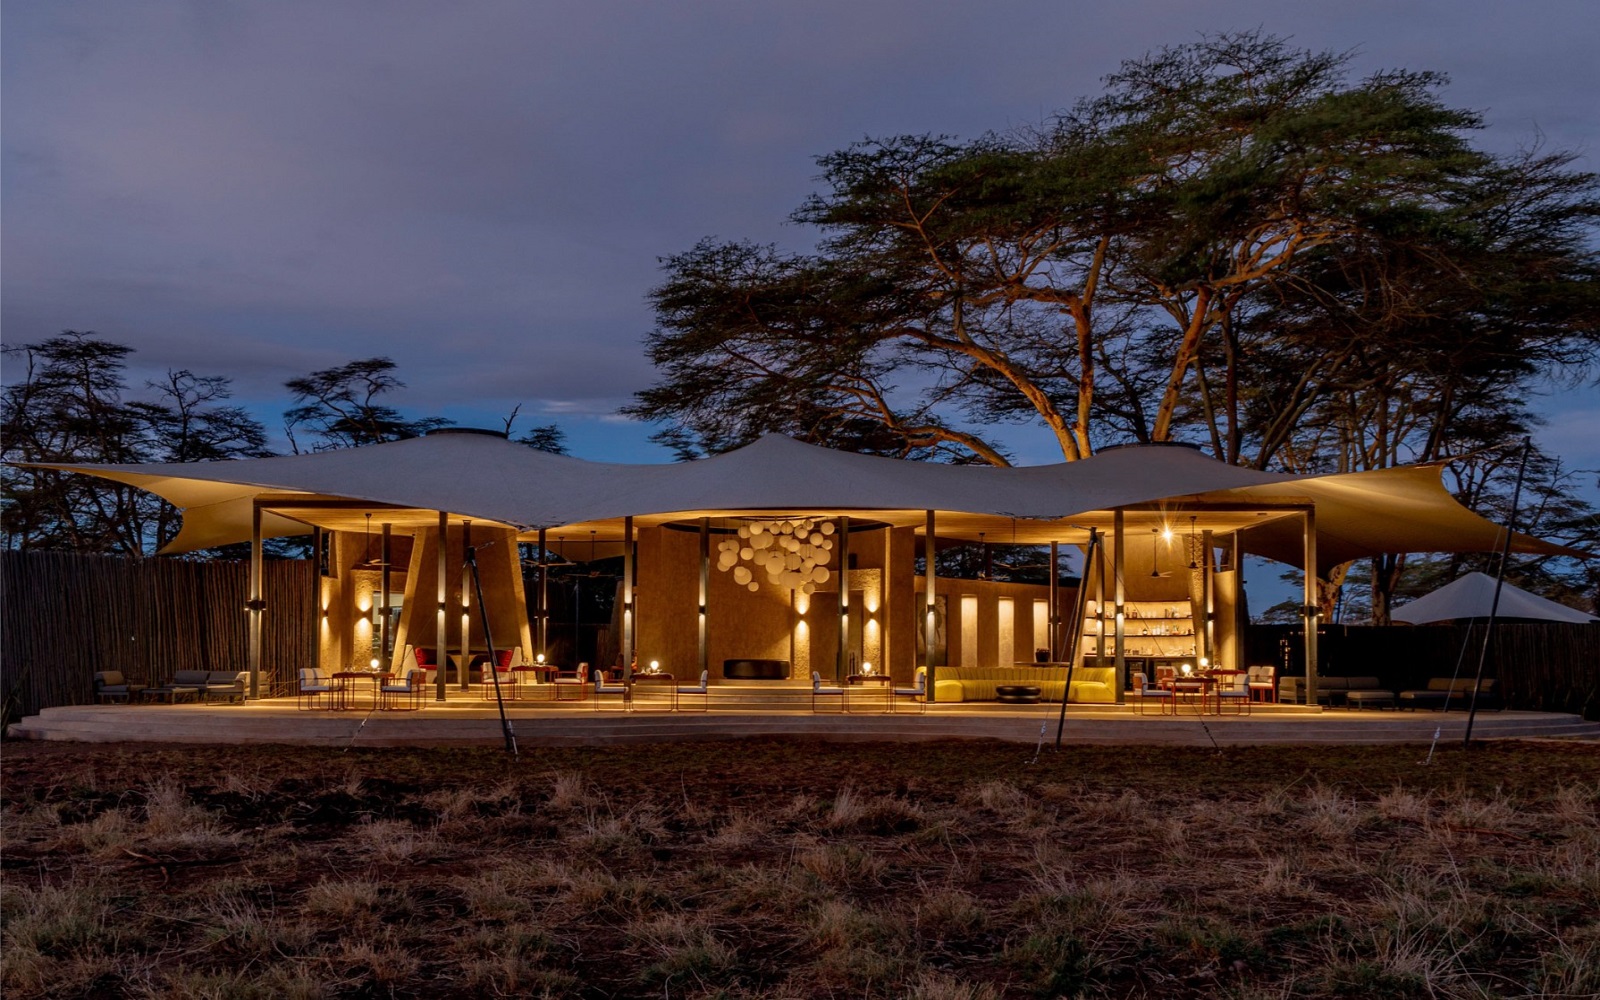 tented safari camp and thorn trees at dusk at Angama-Amboseli Kenya